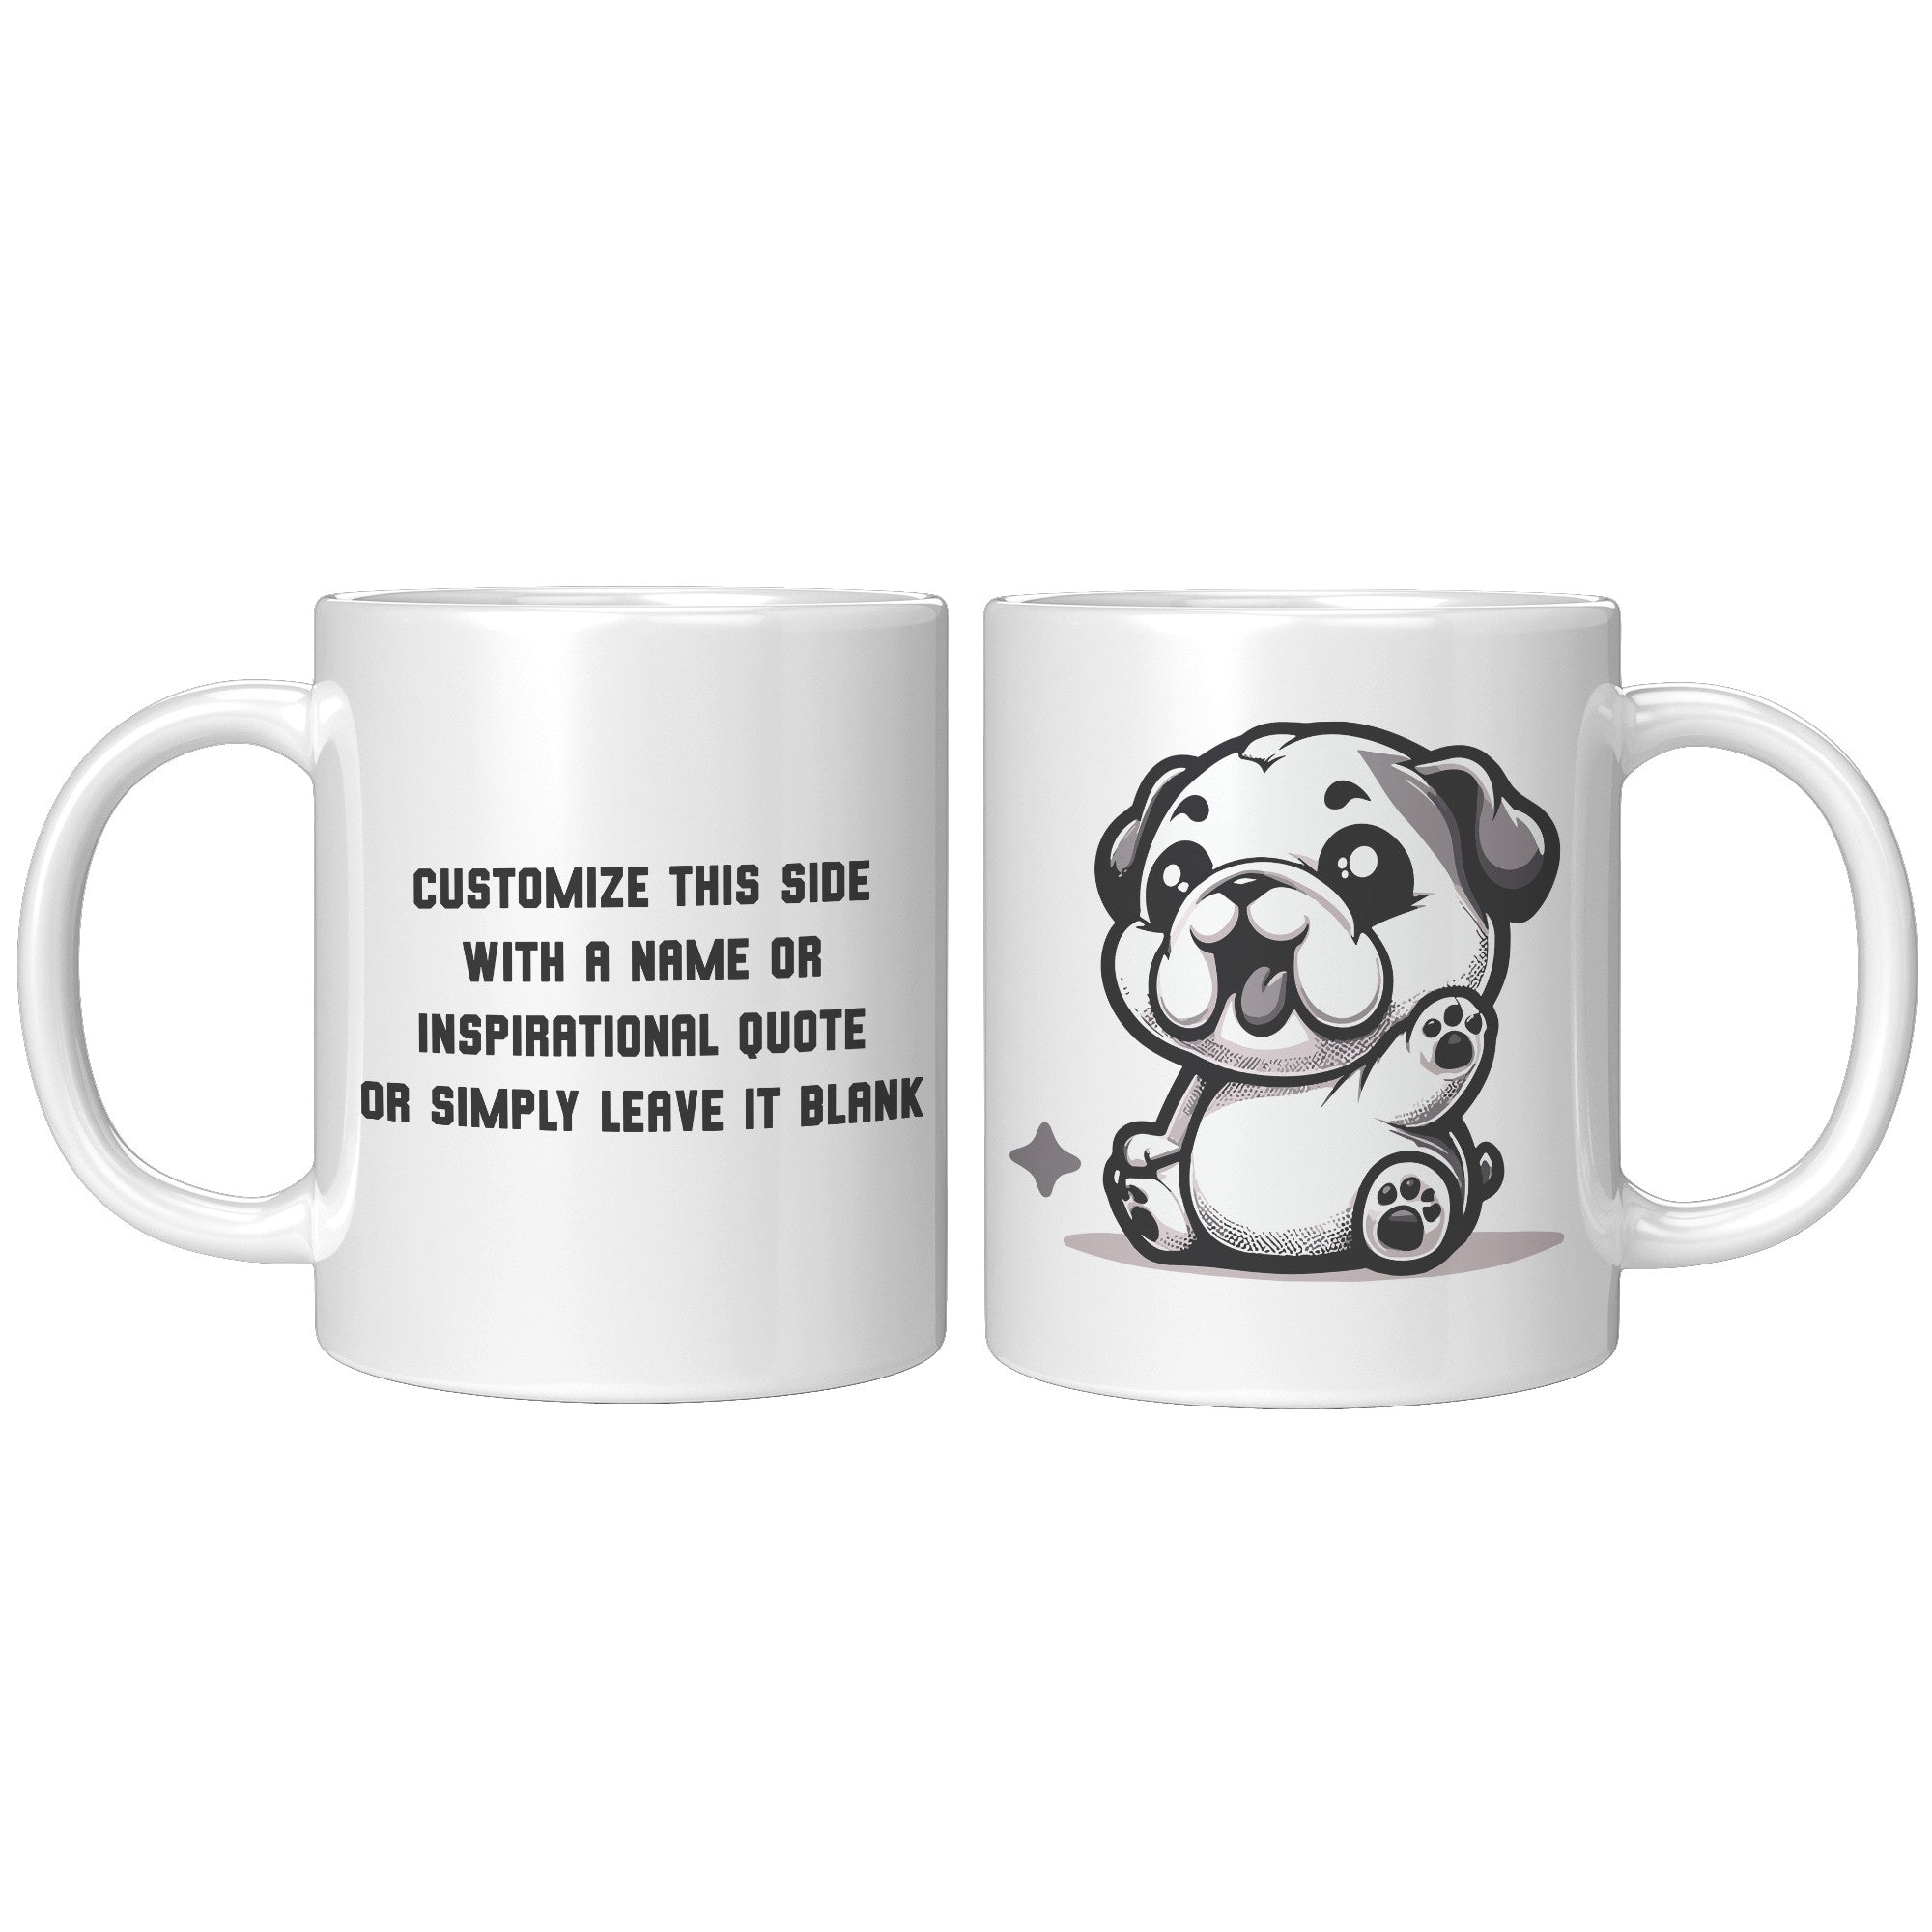 11oz French Bulldog Cartoon Coffee Mug - Frenchie Lover Coffee Mug - Perfect Gift for French Bulldog Owners - Adorable Bat-Eared Dog Coffee Mug - G